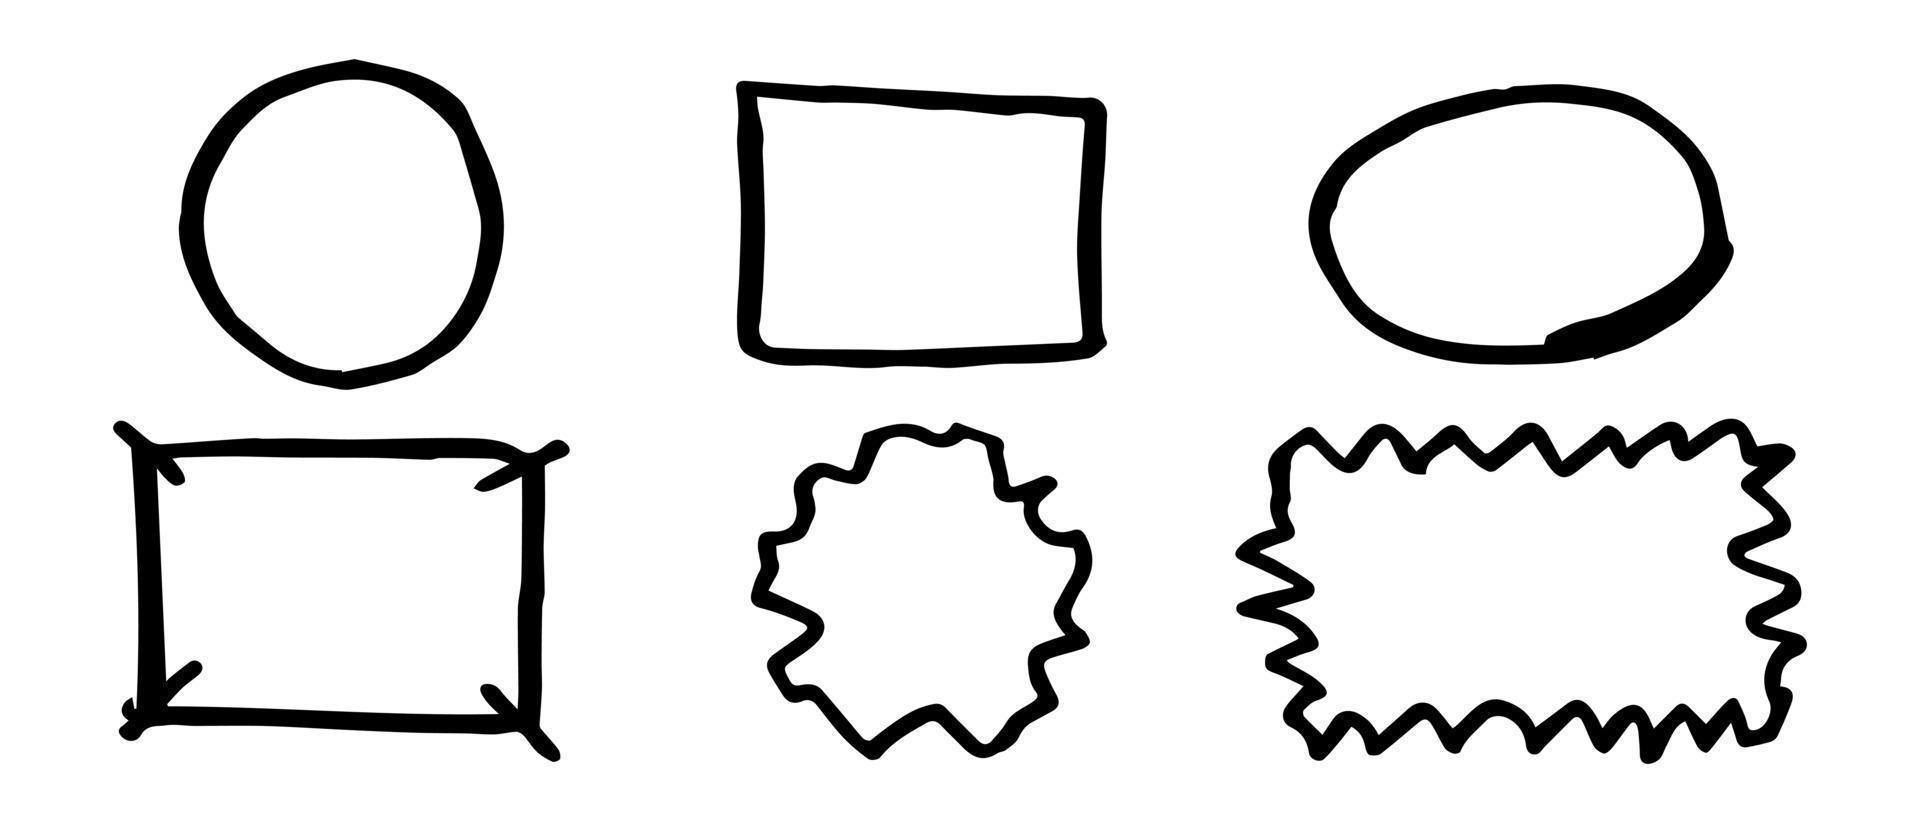 définir le cadre et le cercle doodle pour référence de conception. vecteur